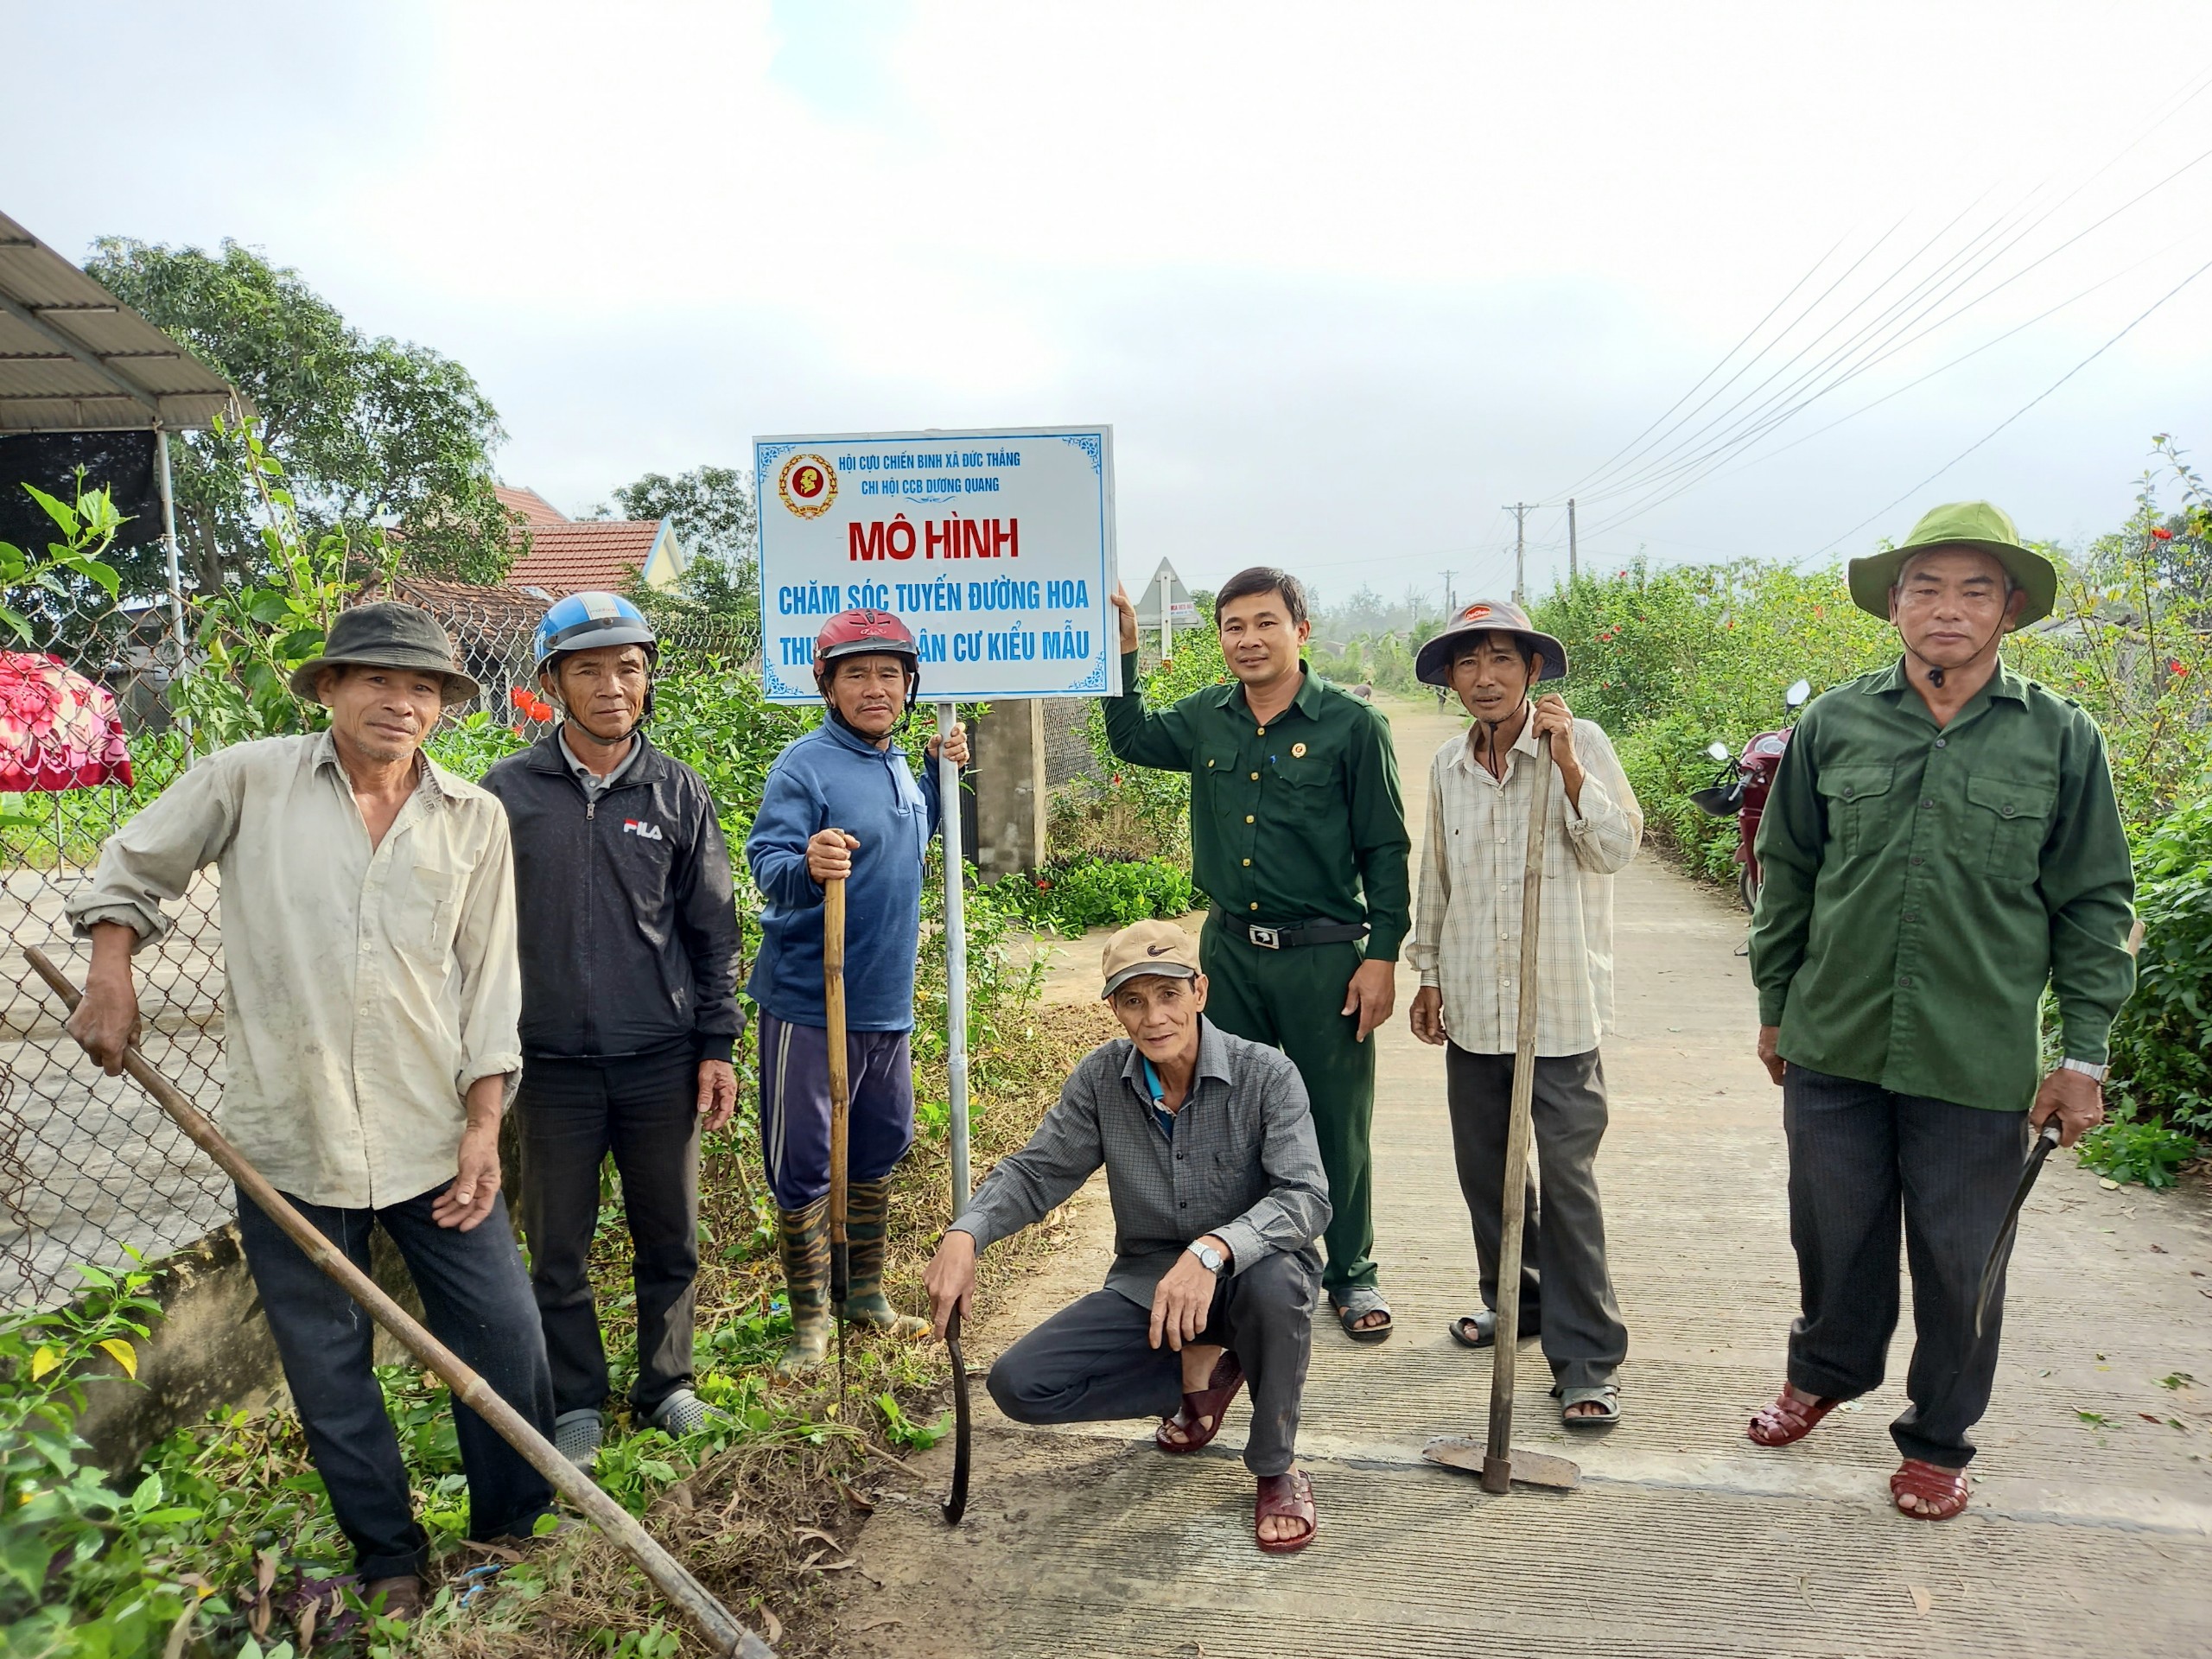 Hội viên hội CCB thôn Dương Quang chăm sóc đường hoa tự quản